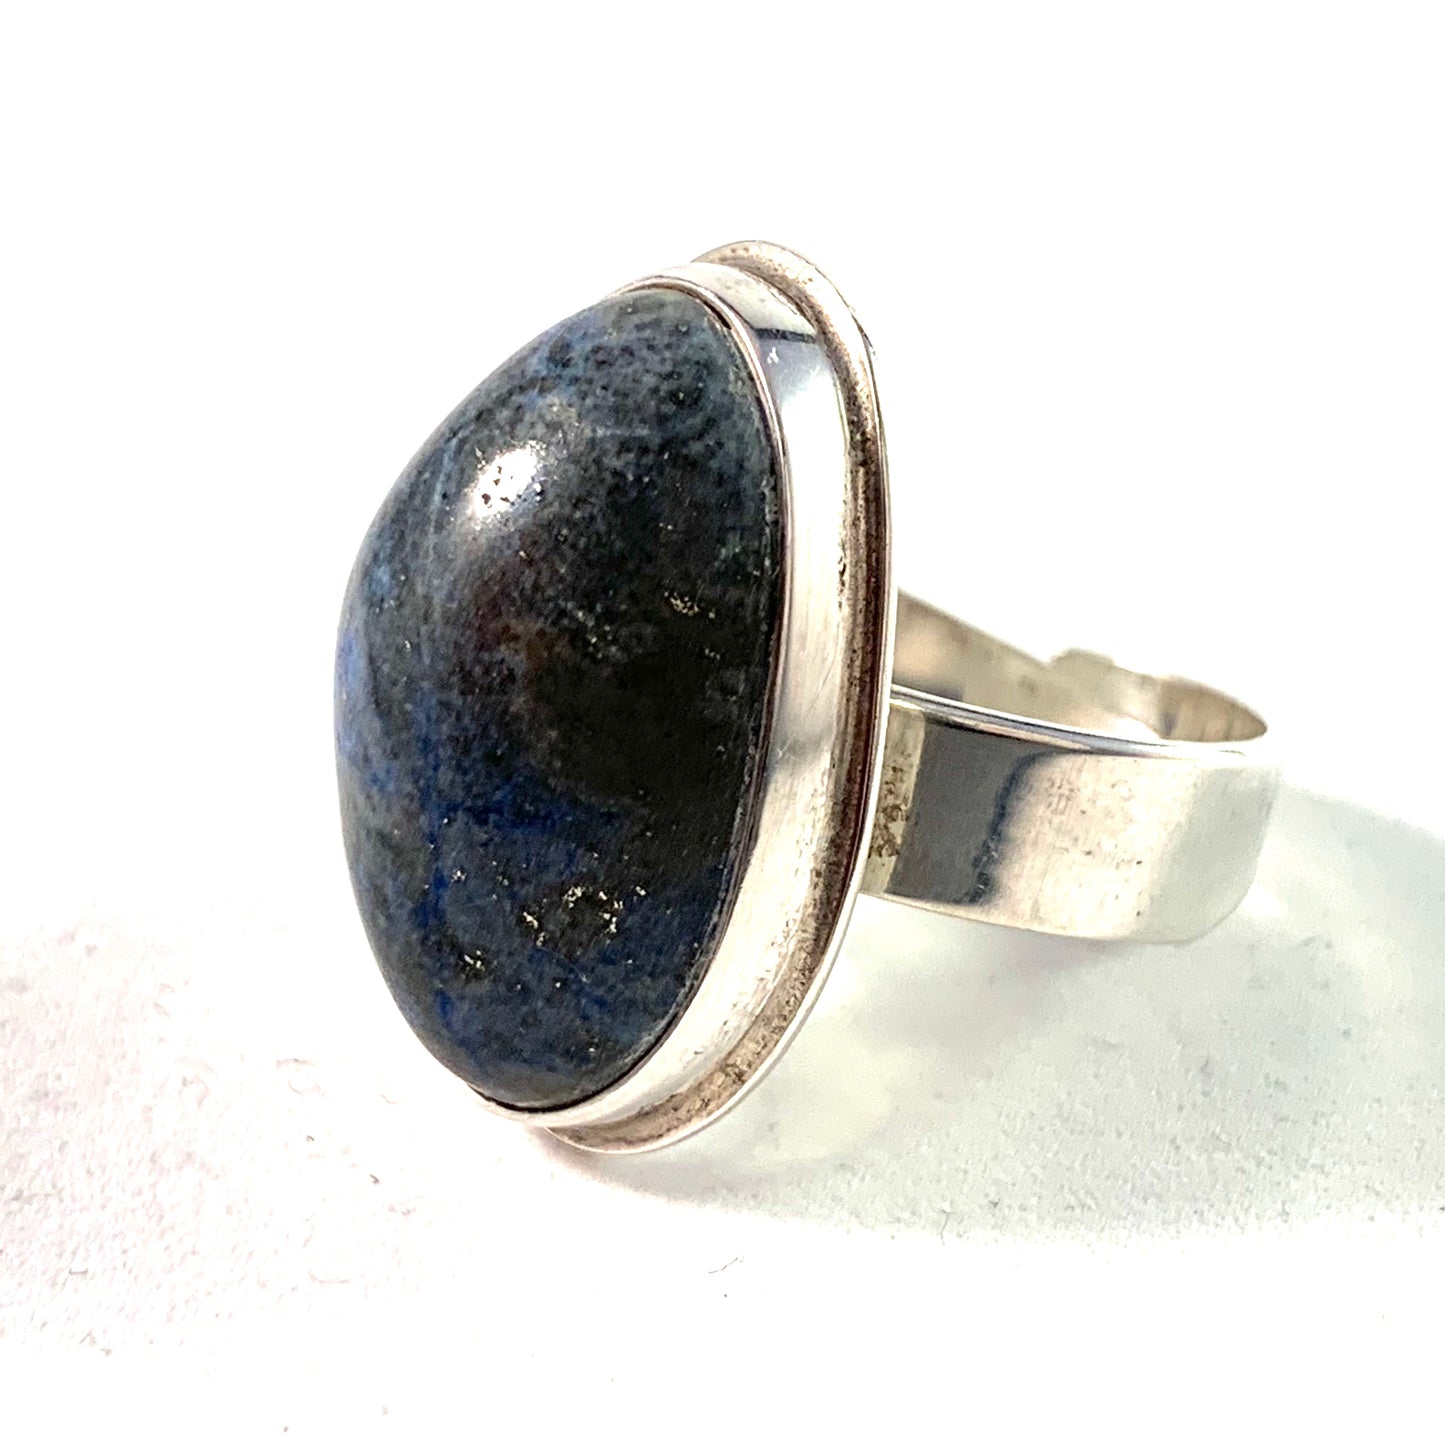 L Magnusson, Sweden 1976 Bold Modernist Silver Lapis Lazuli Ring.